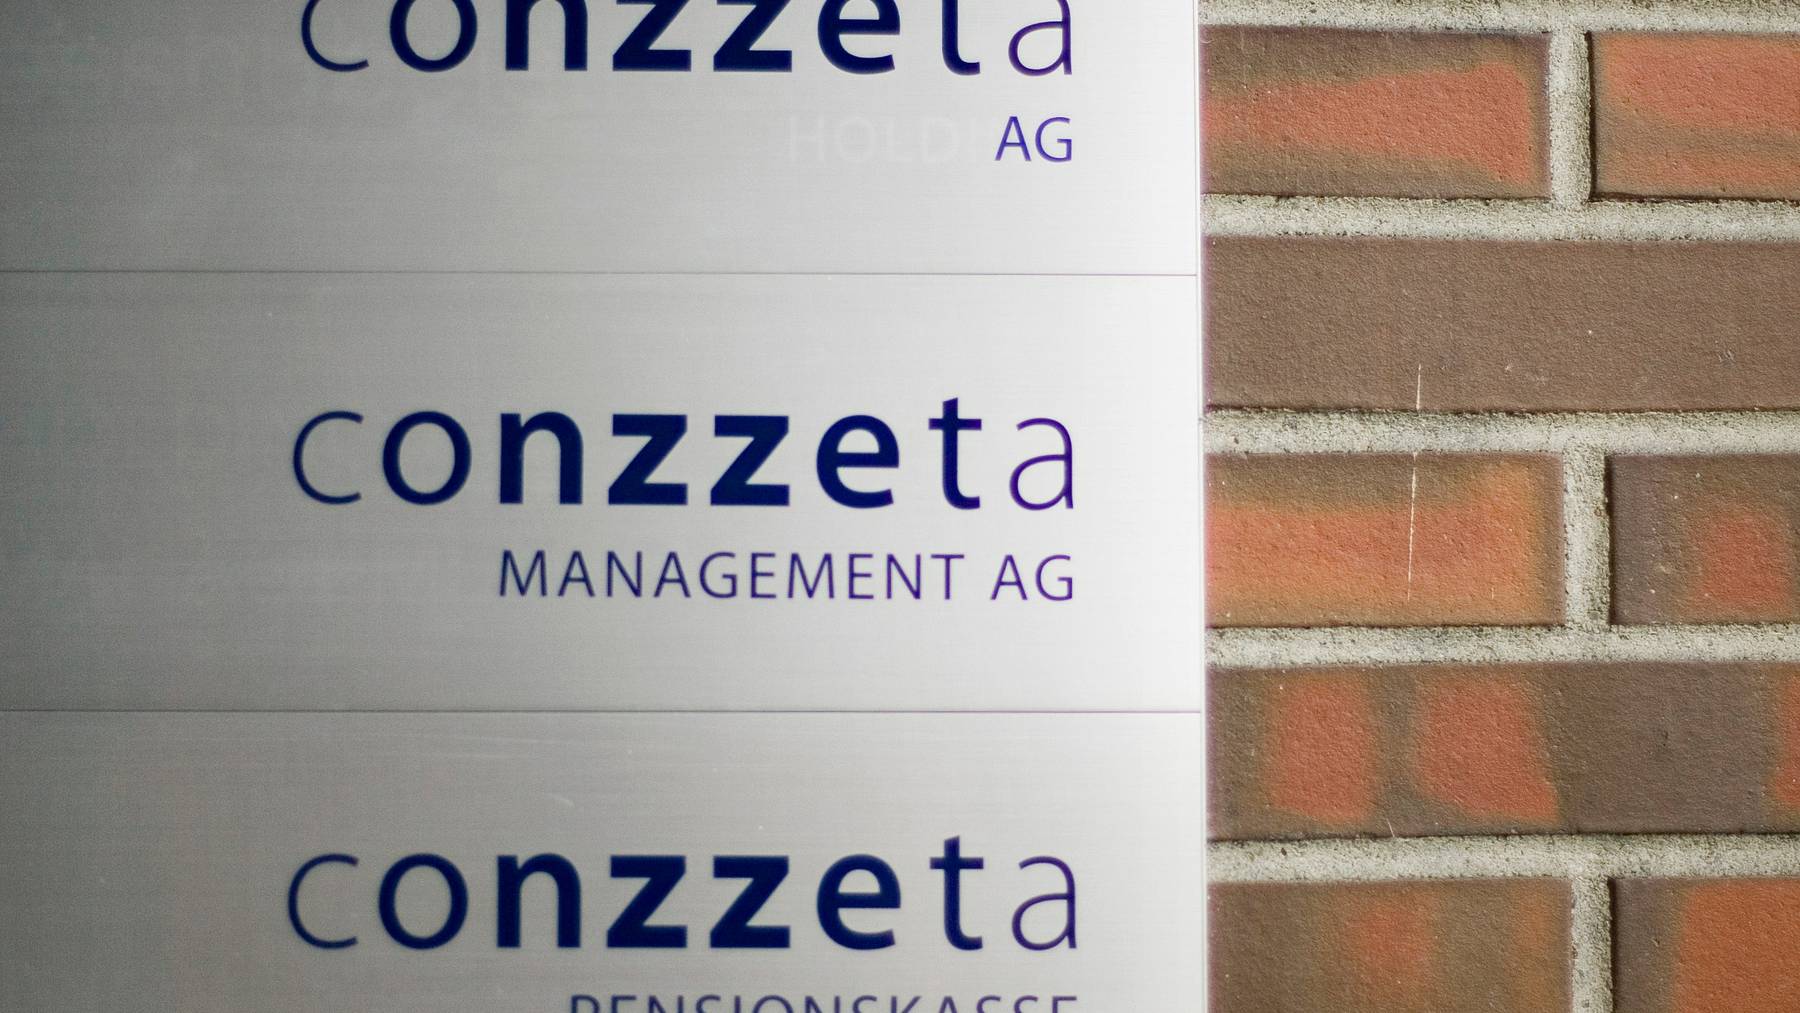 Conzzeta legt seinen Fokus künftig ganz auf das Geschäft mit Maschinen für die Blechbearbeitung und verkauft seine weiteren Geschäftsbereiche. (Symbolbild)